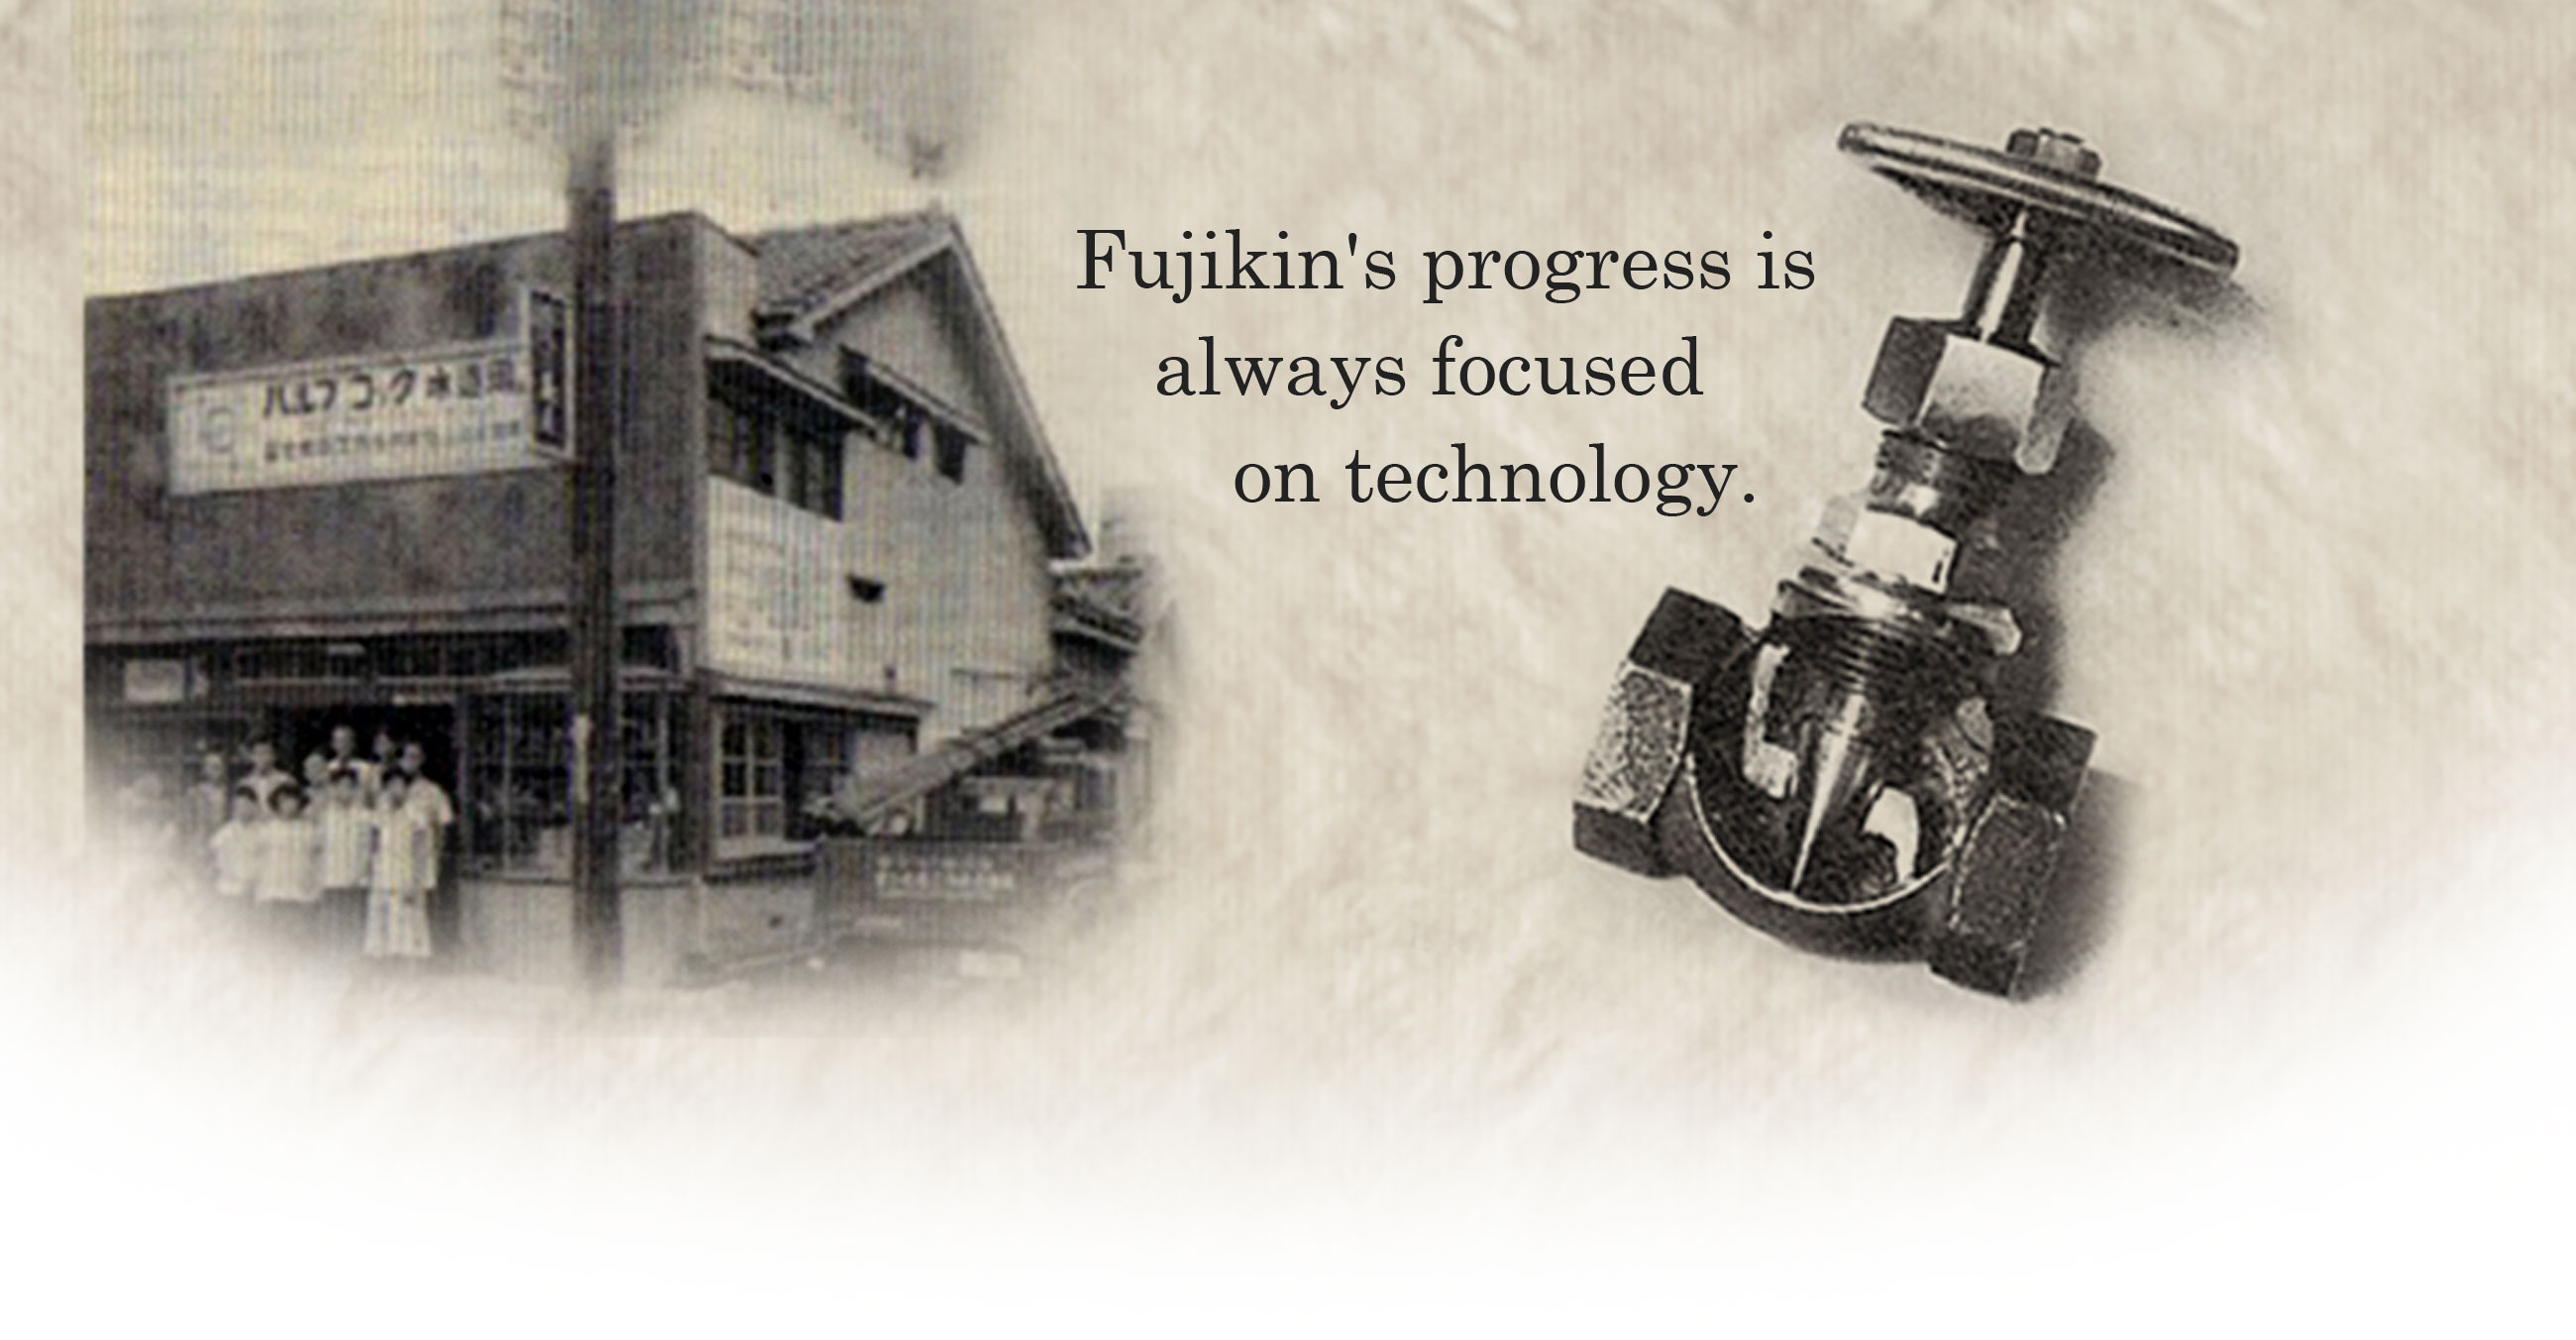 Fujikin's progress is always focused on technology.